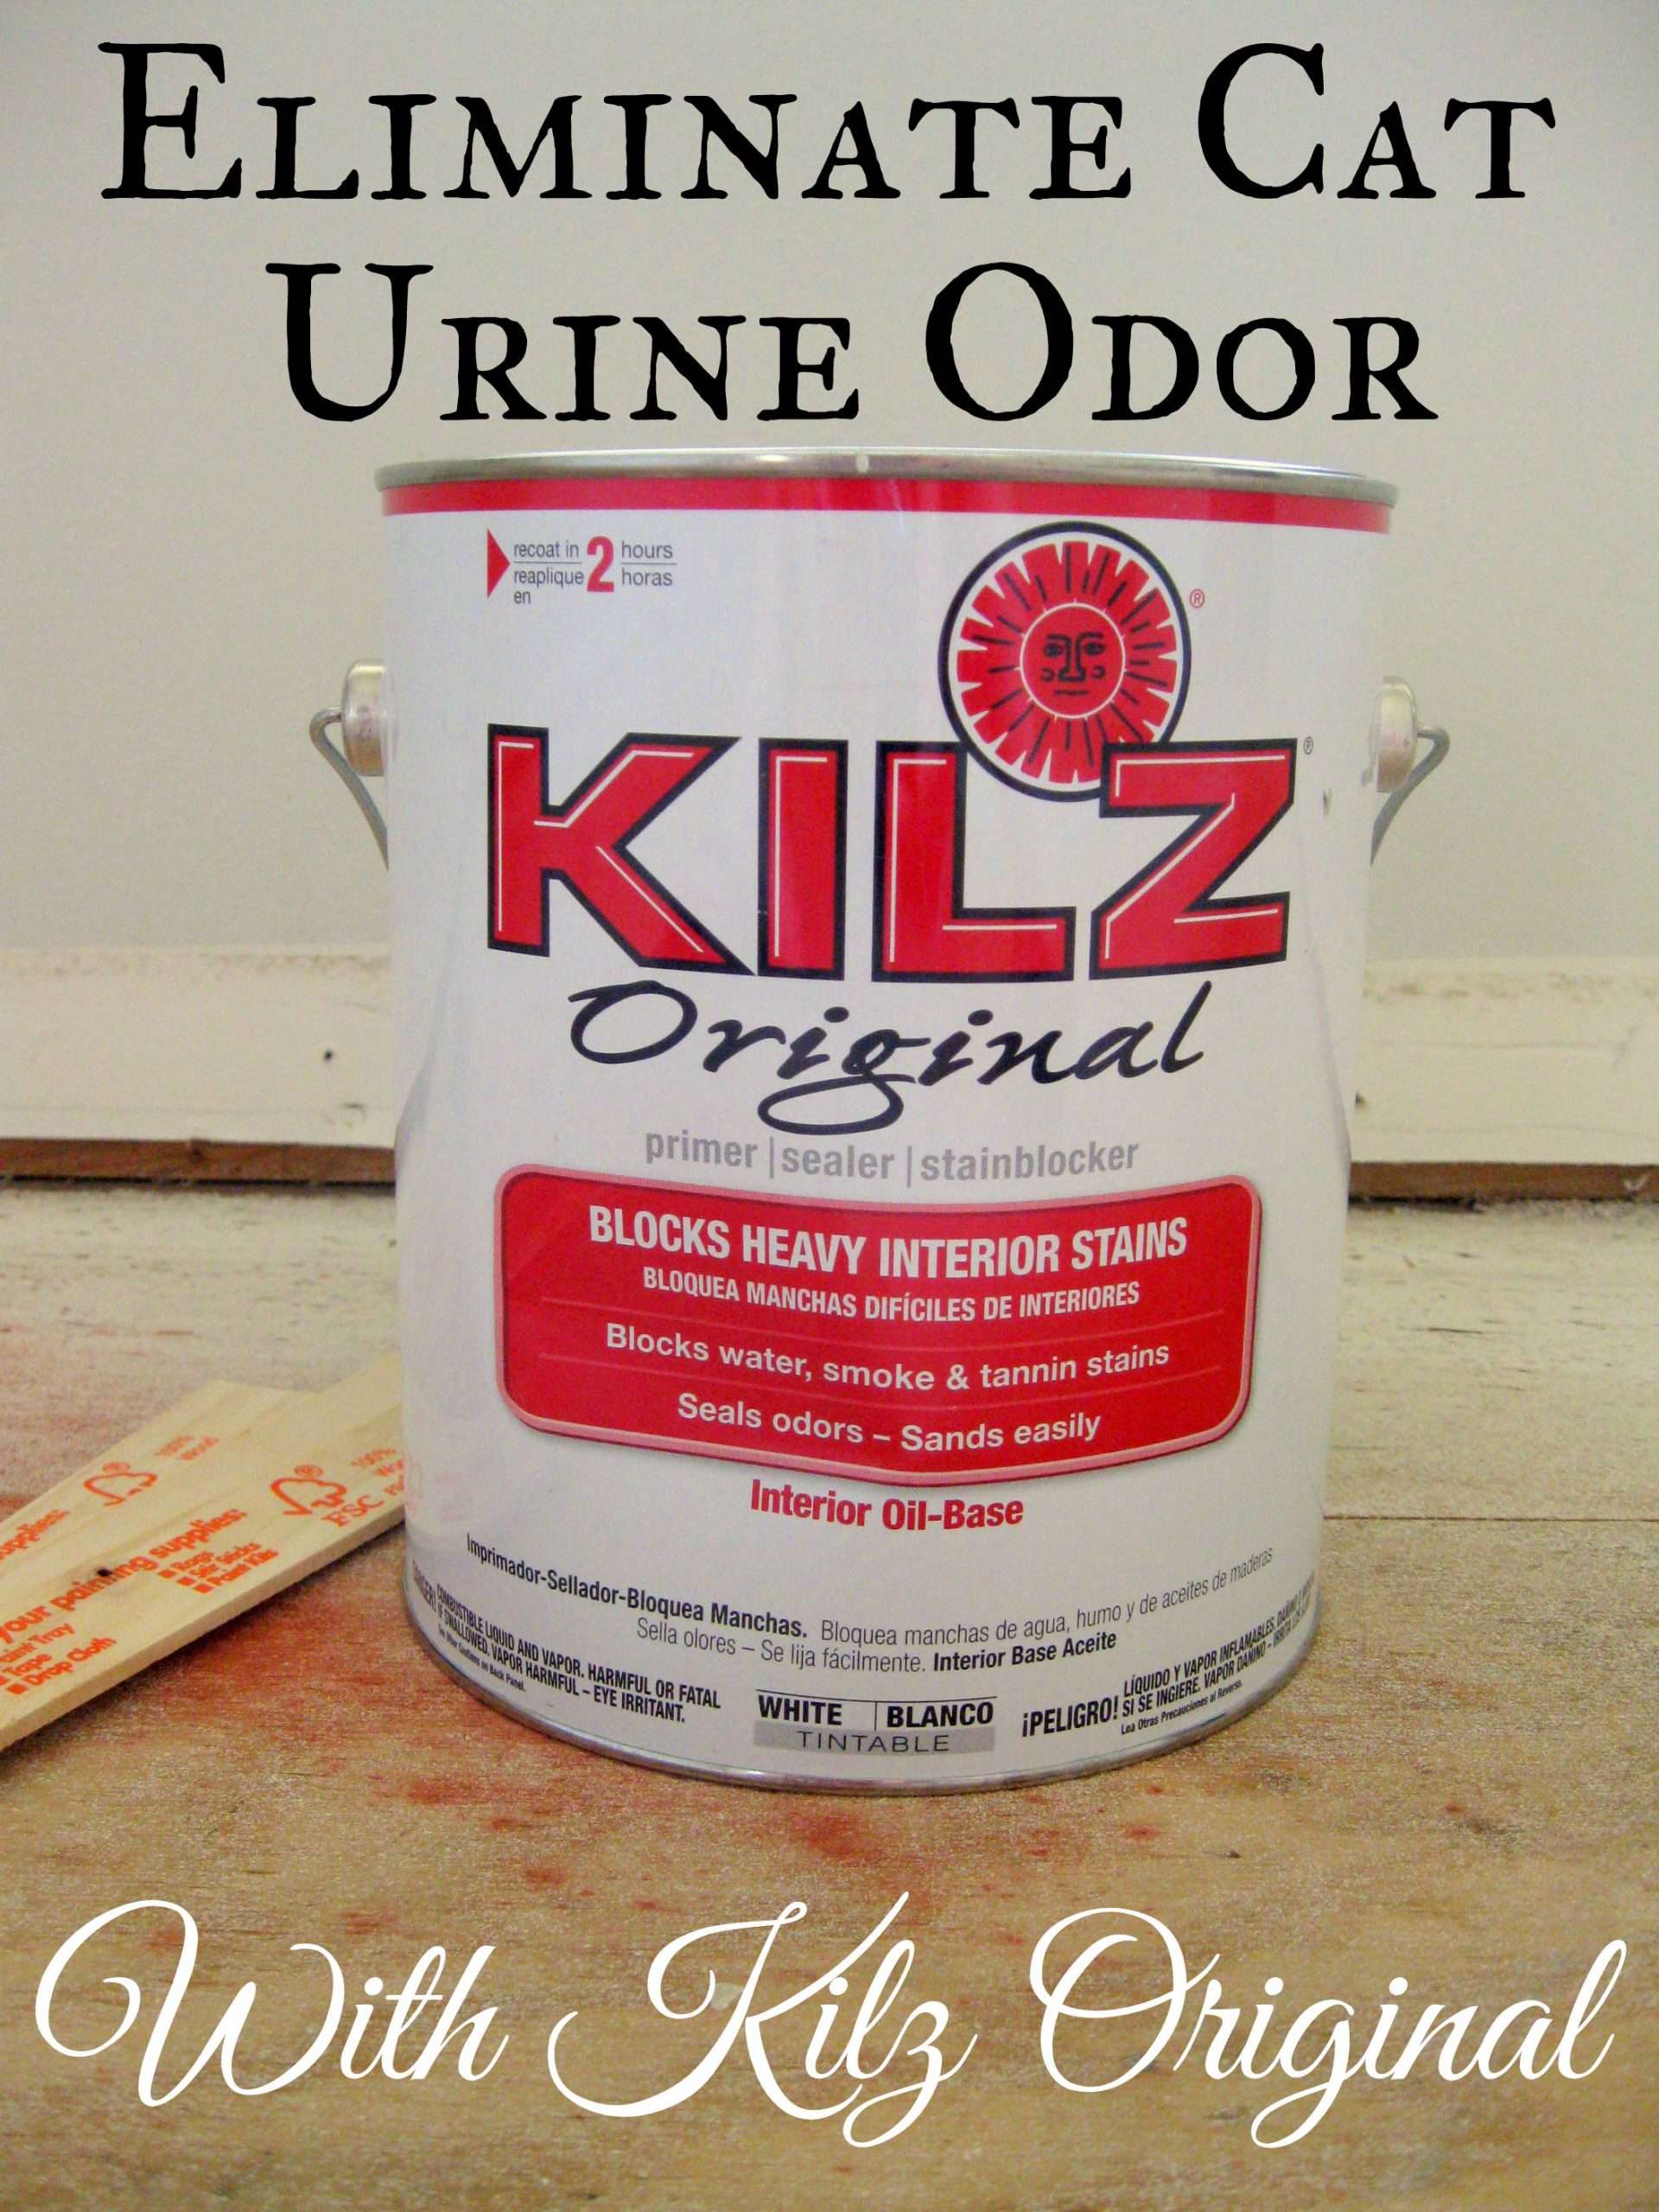 Eliminating Cat Urine Odor